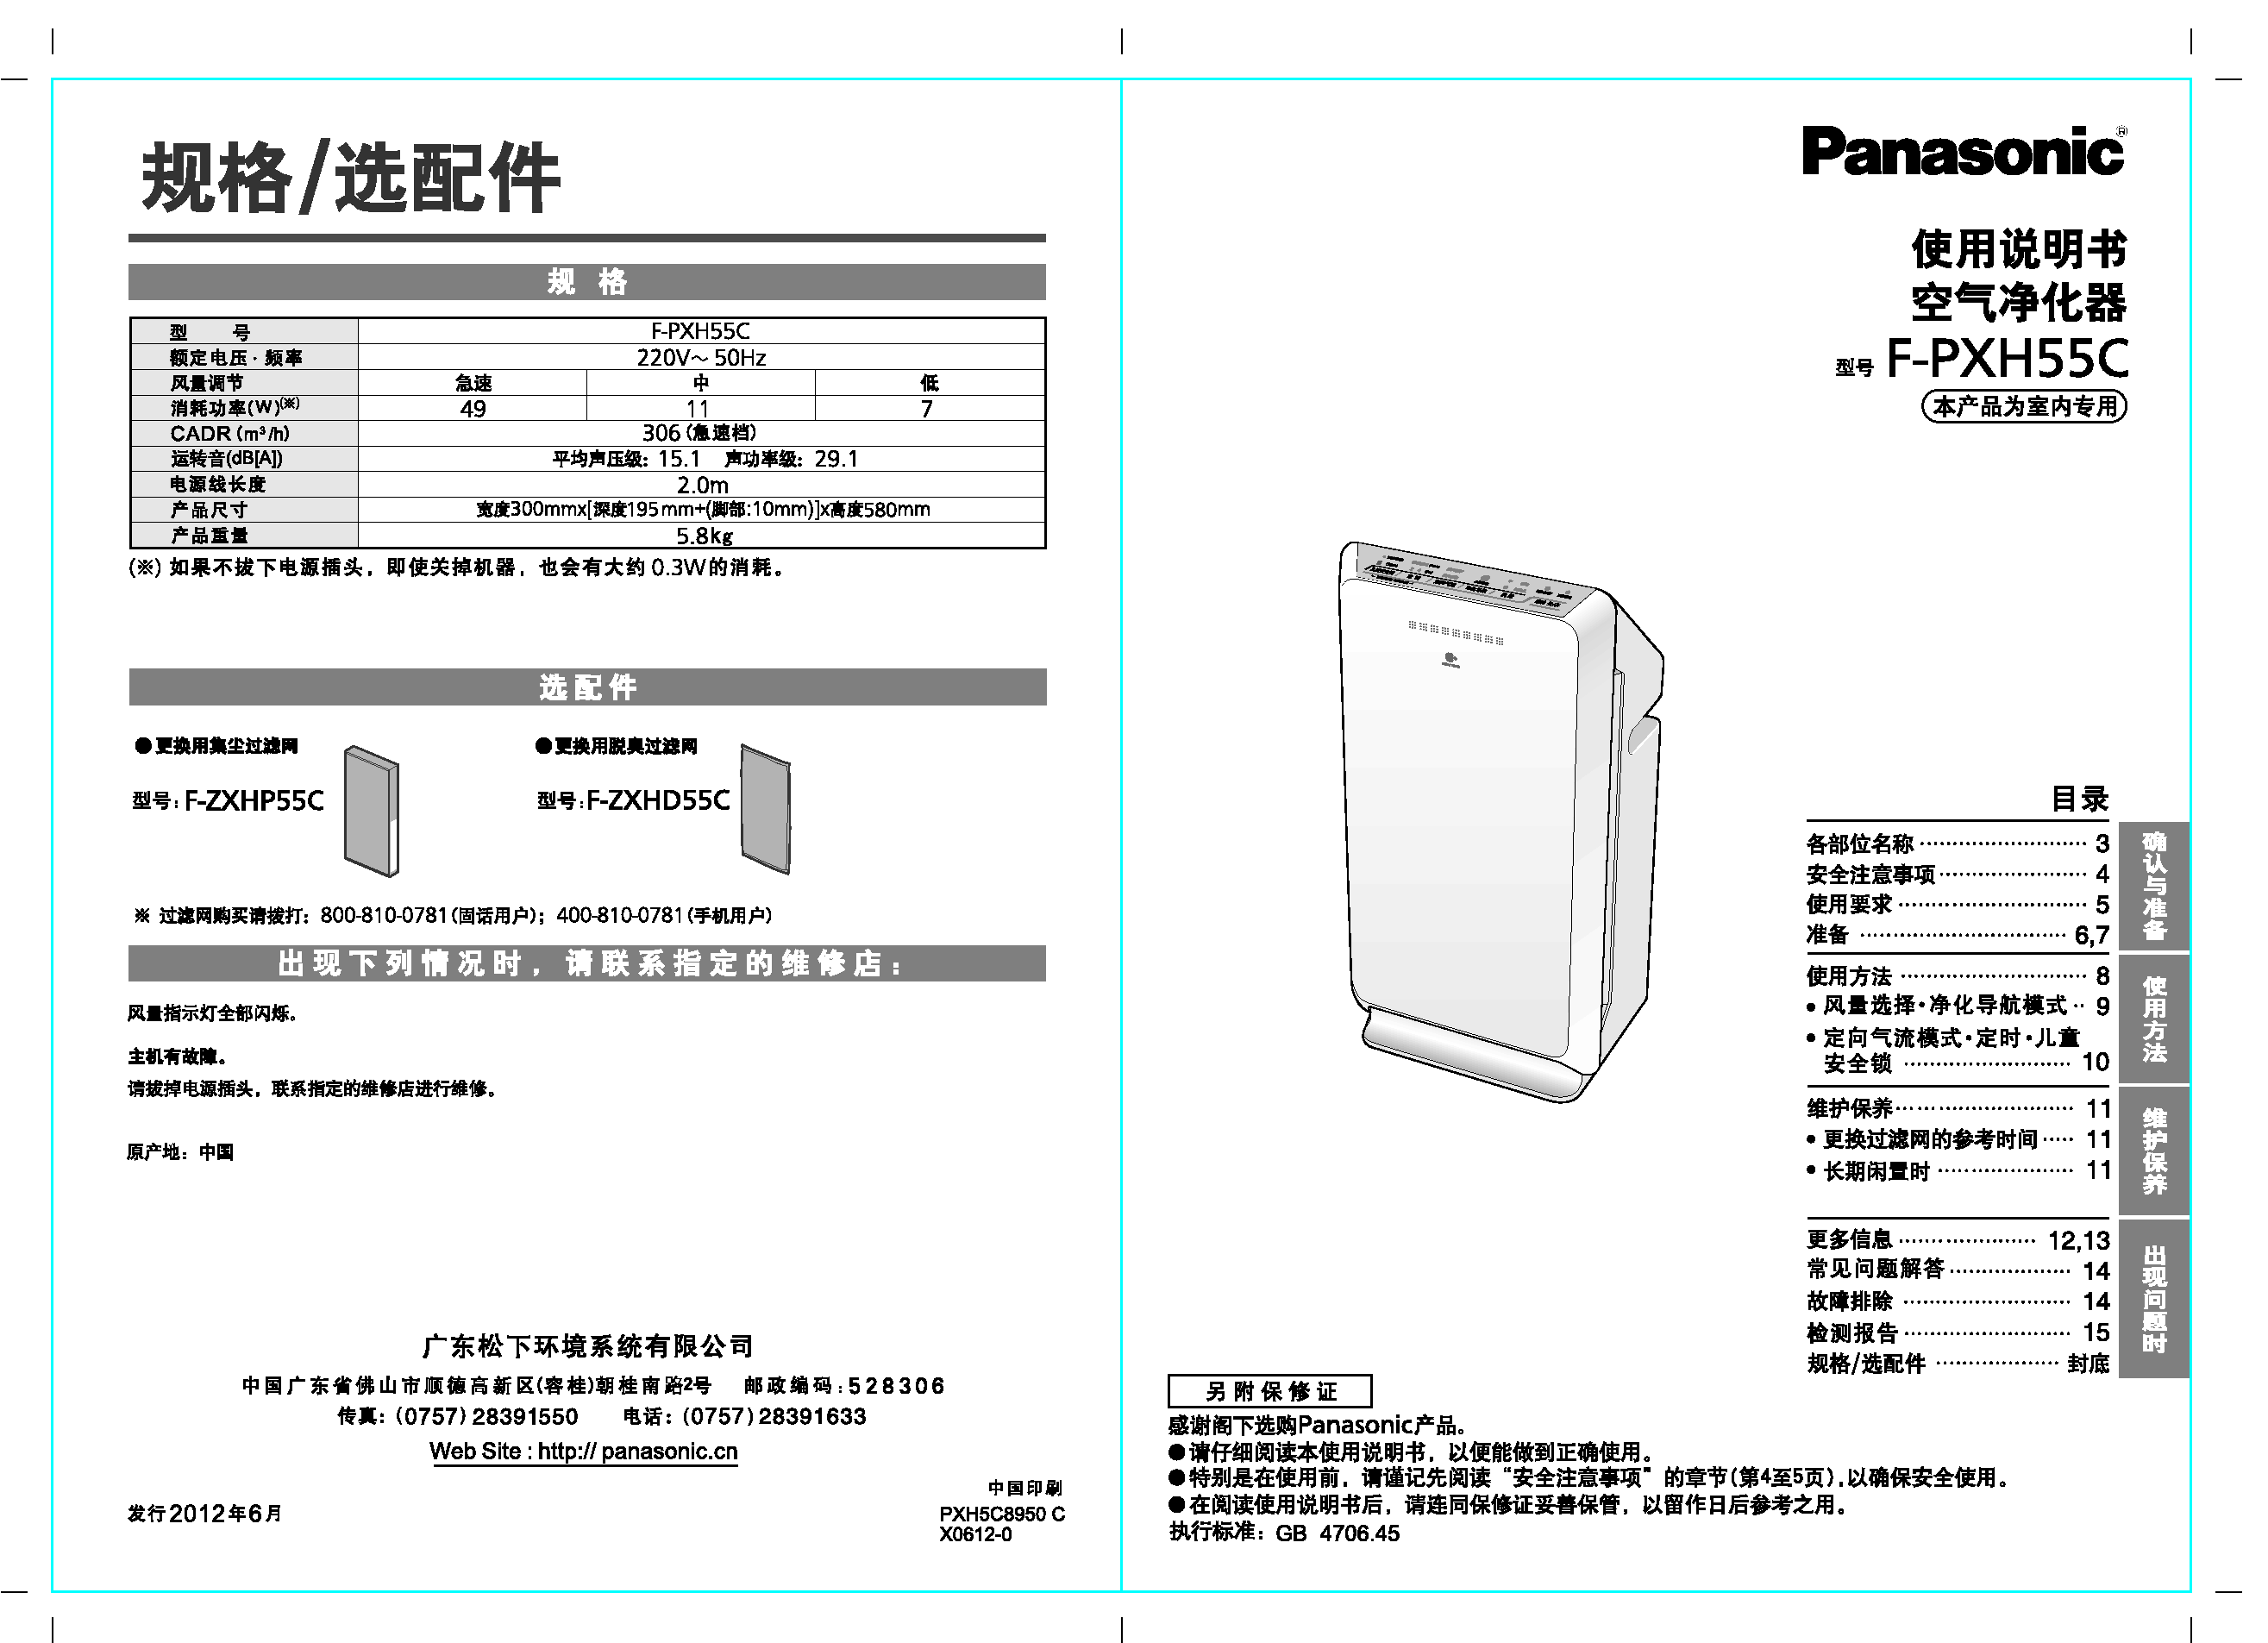 松下 Panasonic F-PXH55C 说明书 封面